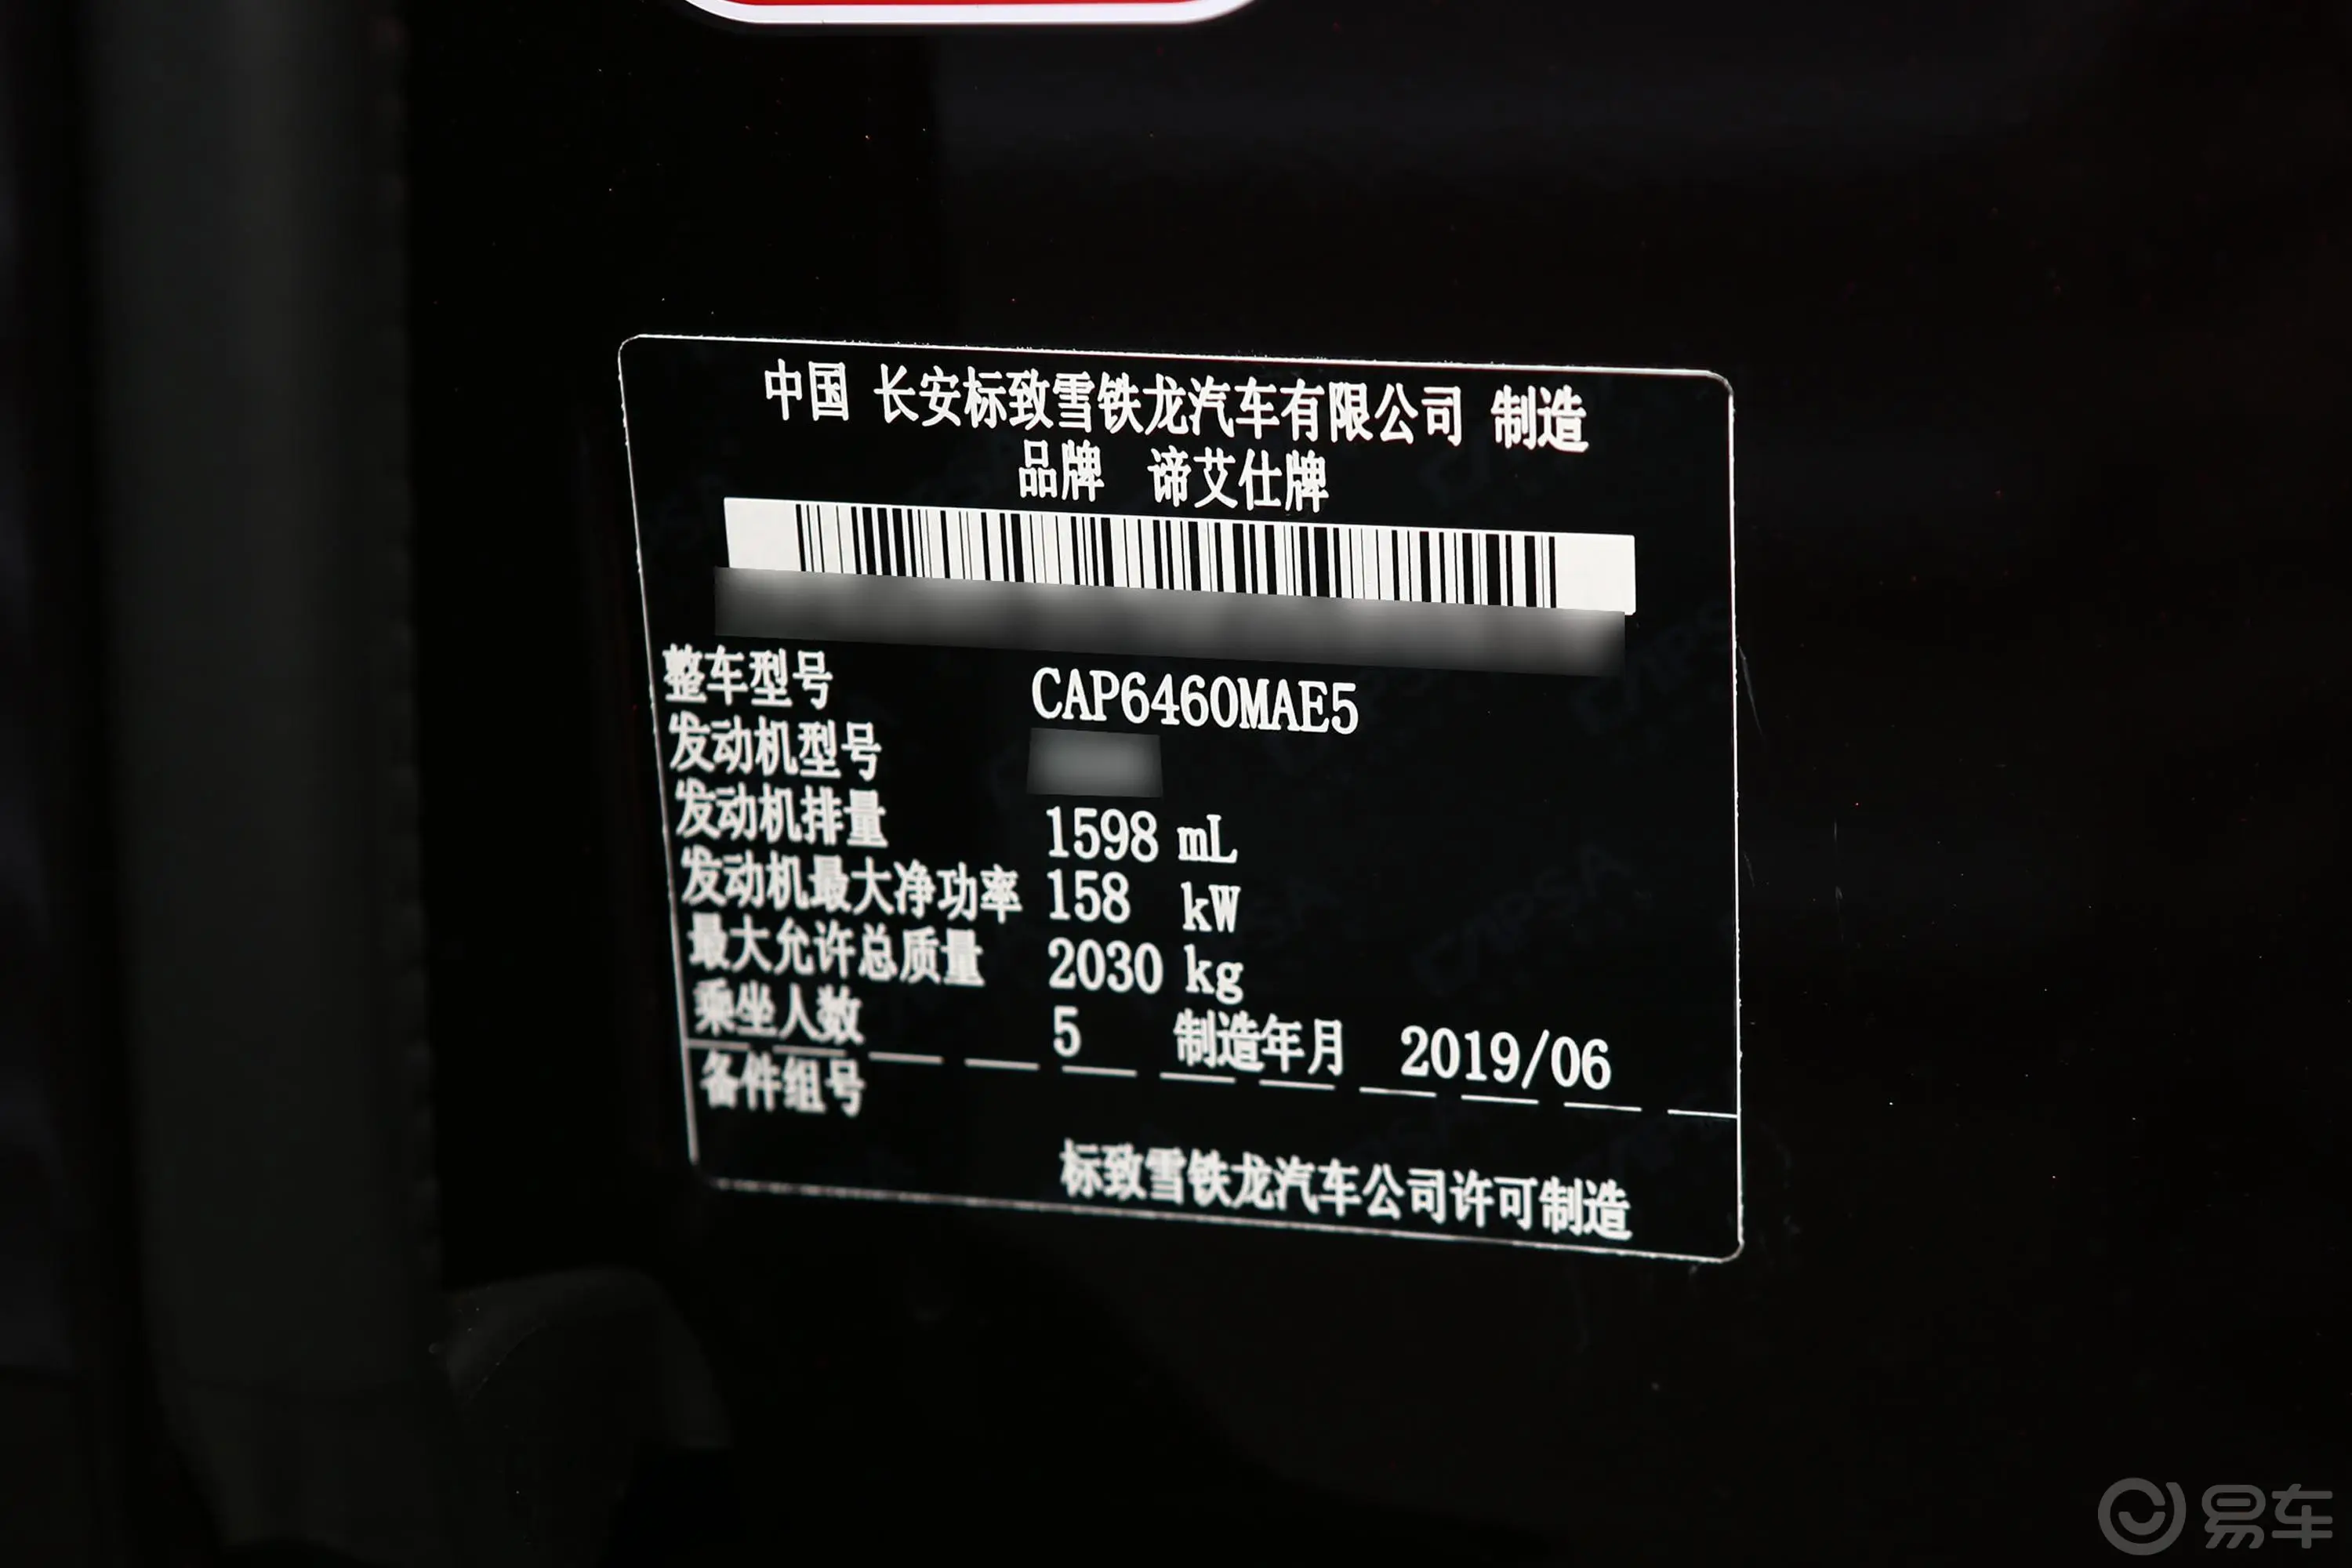 DS 745THP 歌剧院版车辆信息铭牌